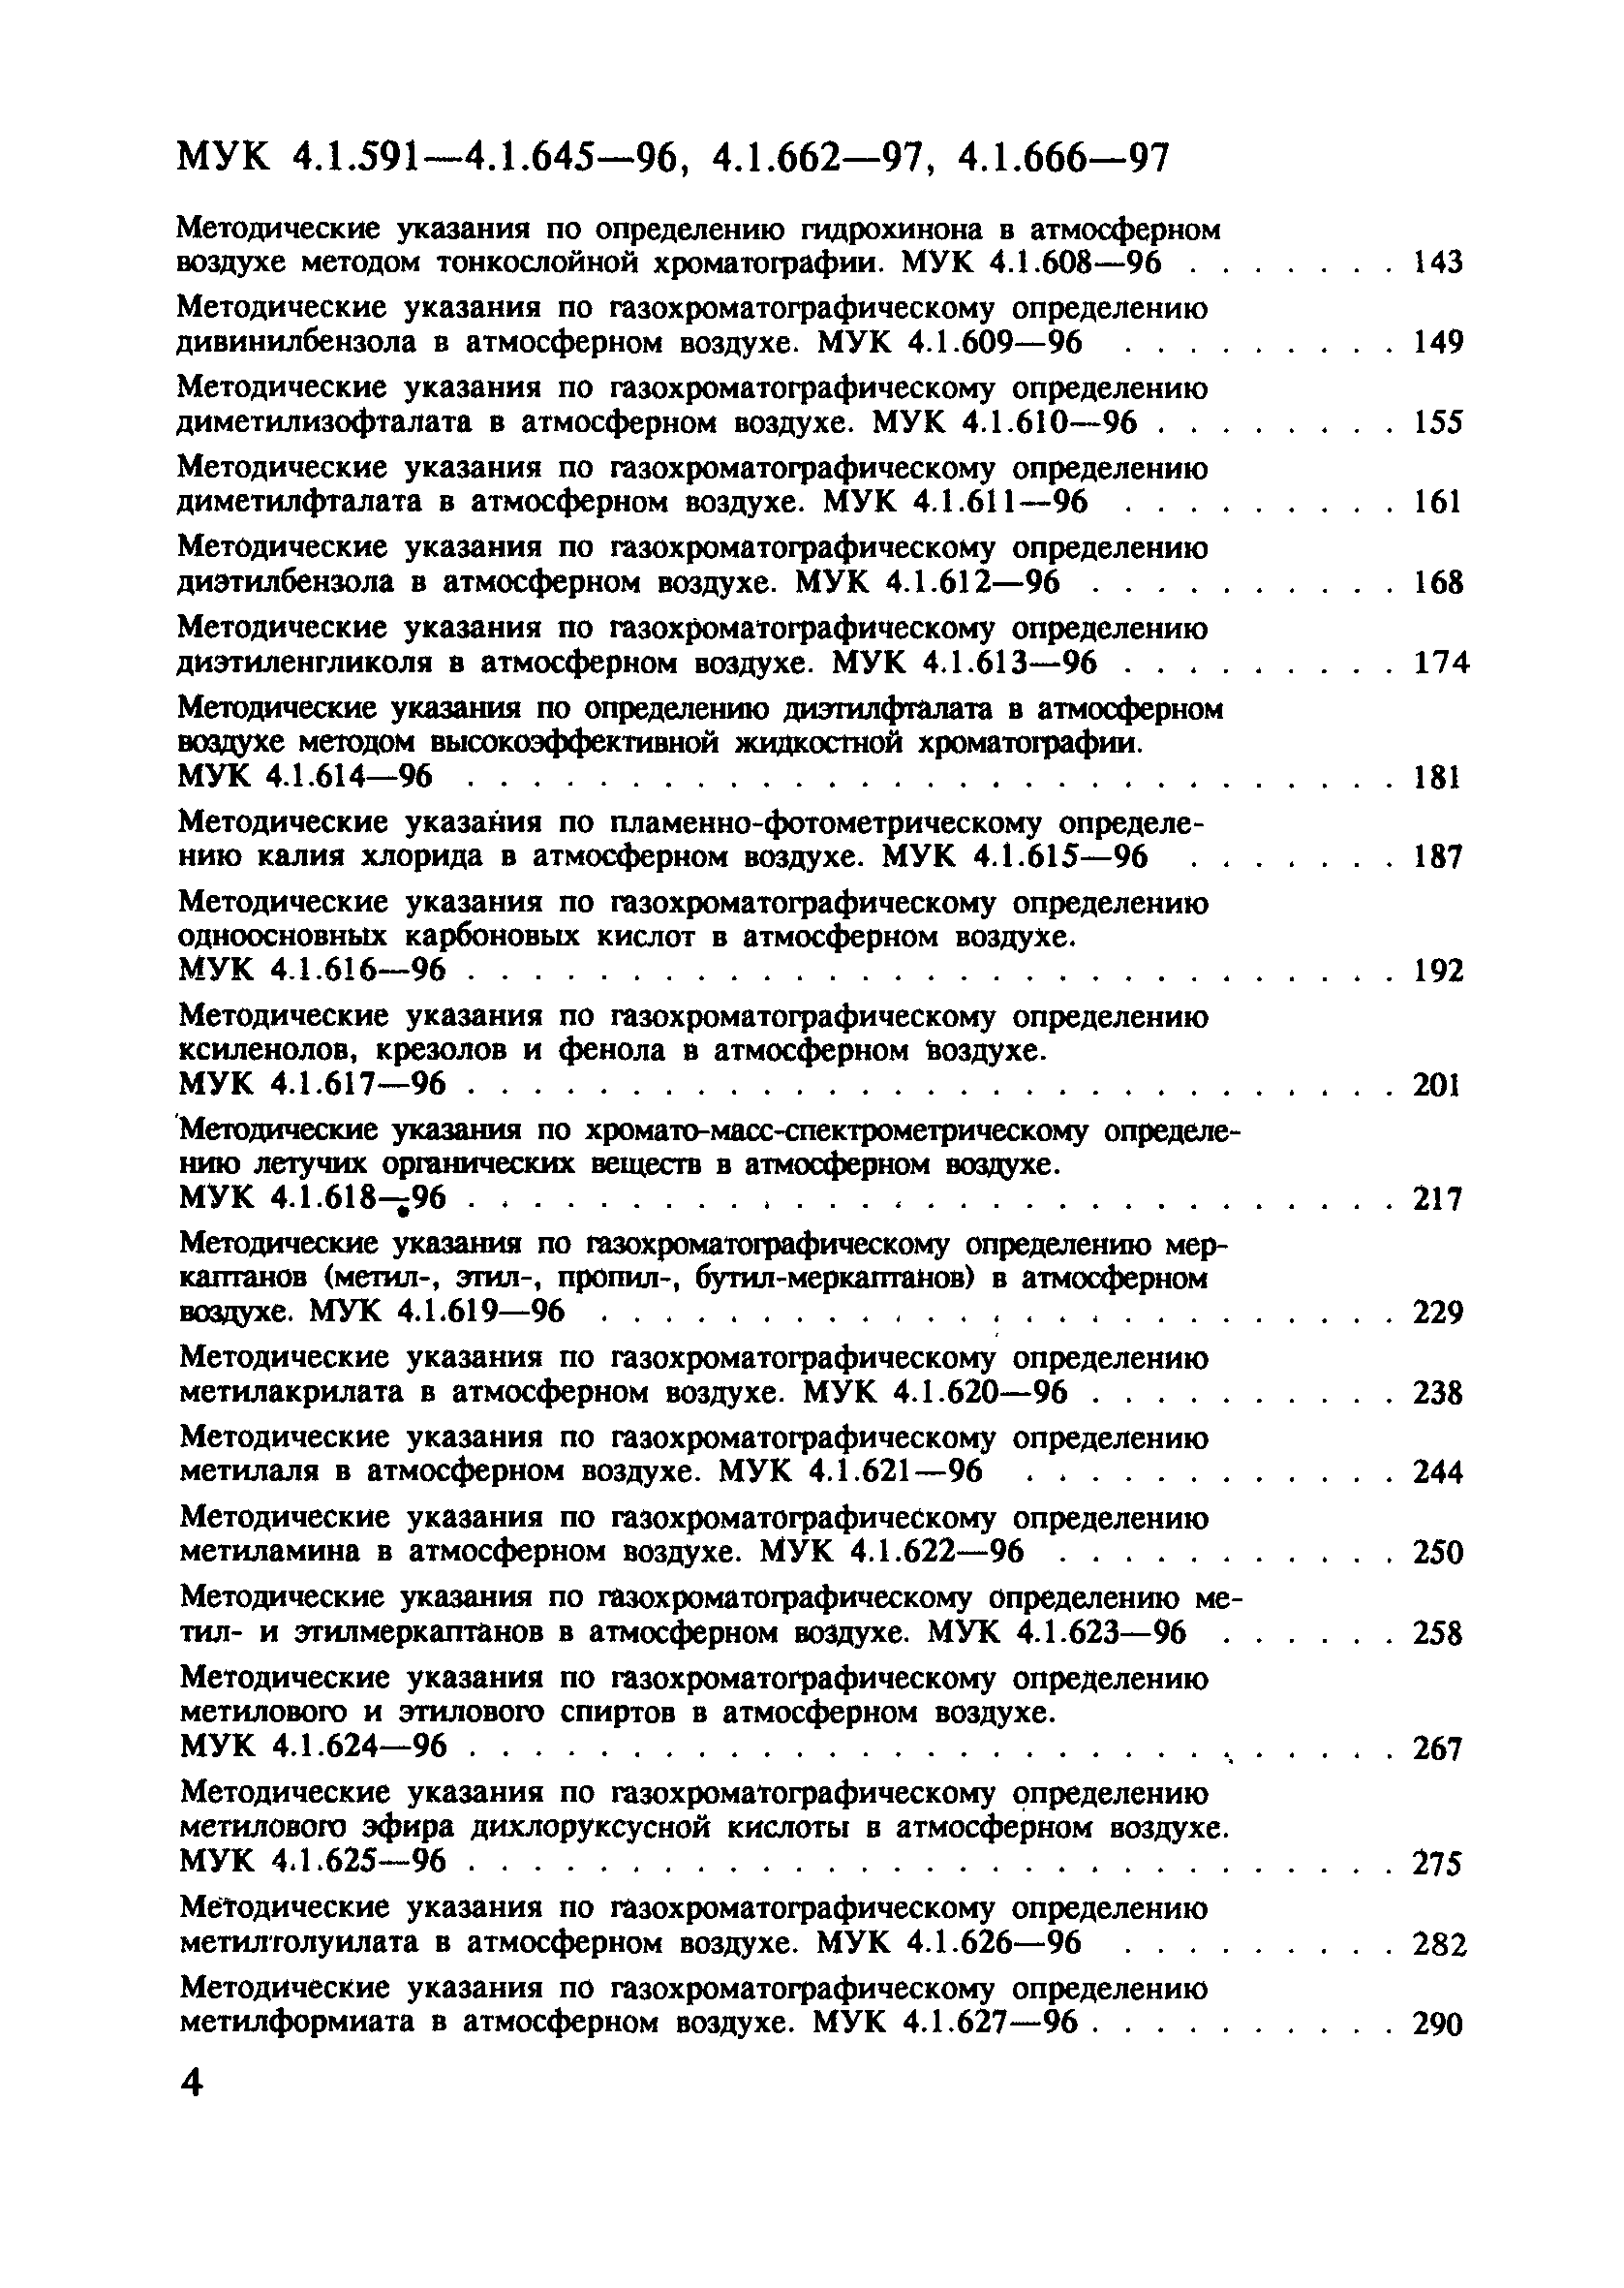 МУК 4.1.645-96